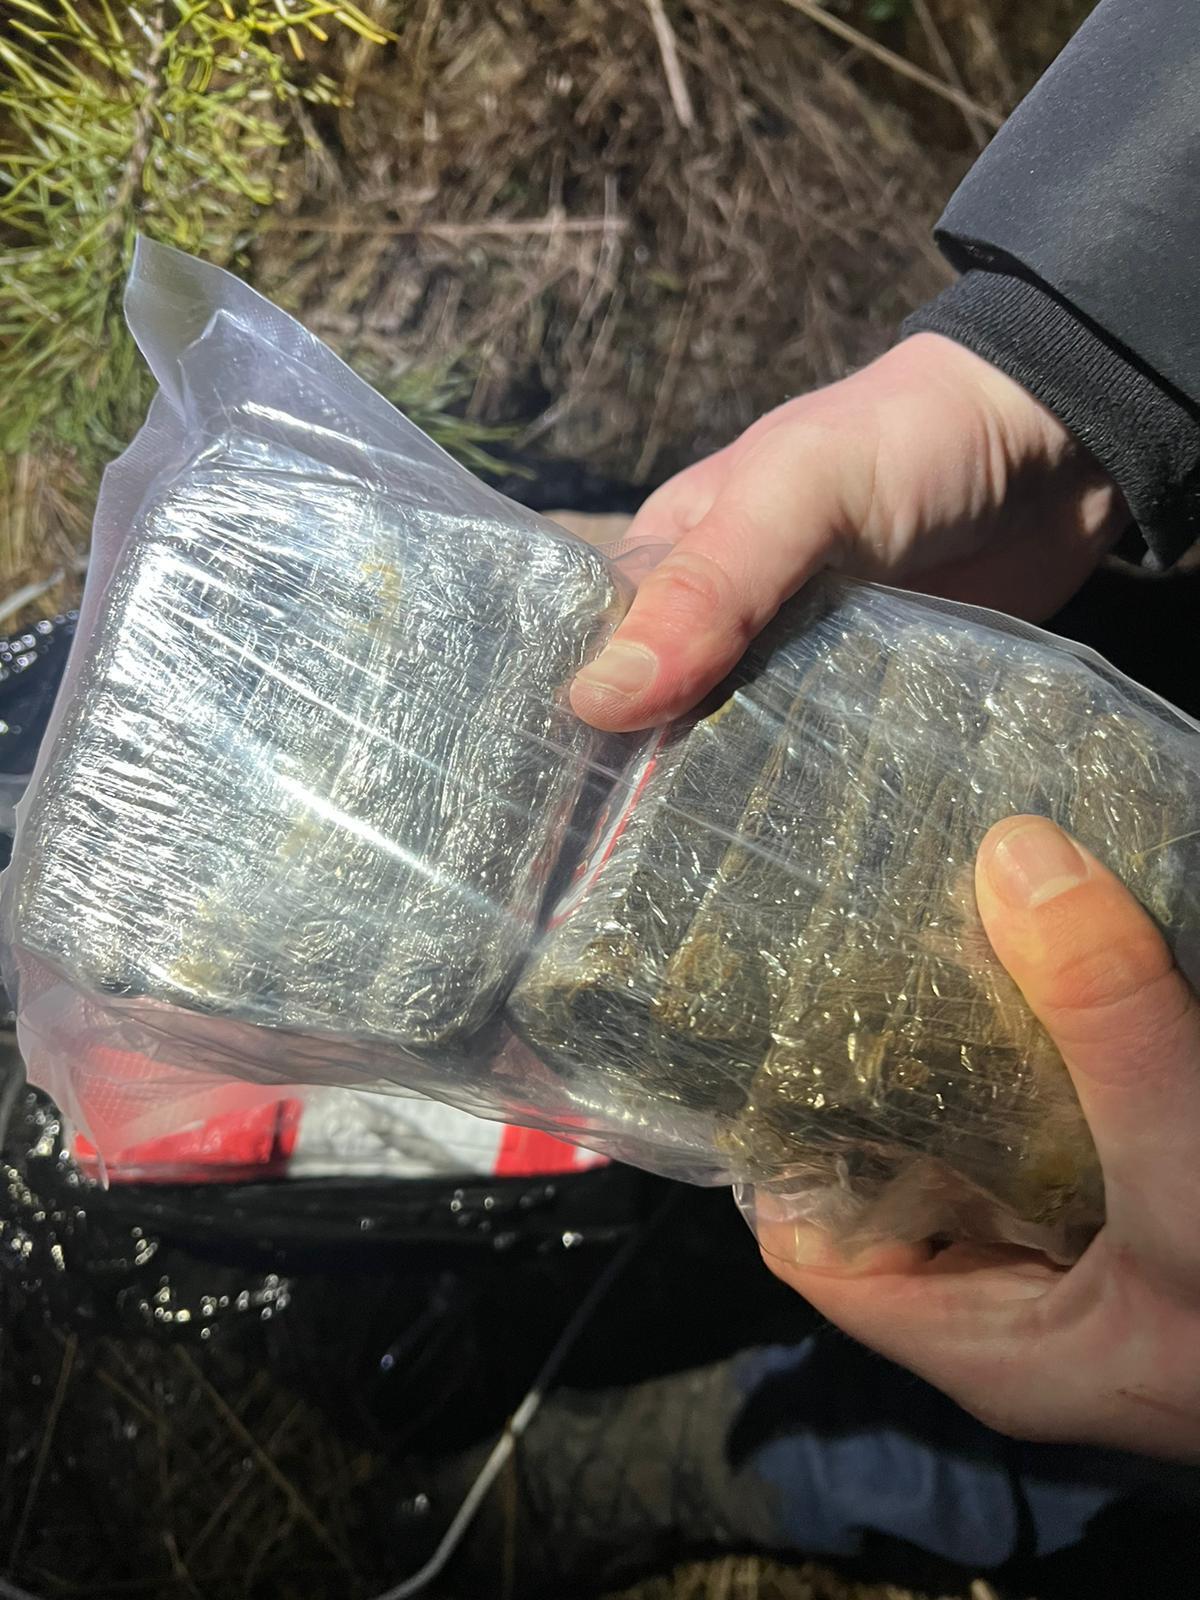 Прикордонники та СБУ збили квадрокоптер із наркотиками на Волині